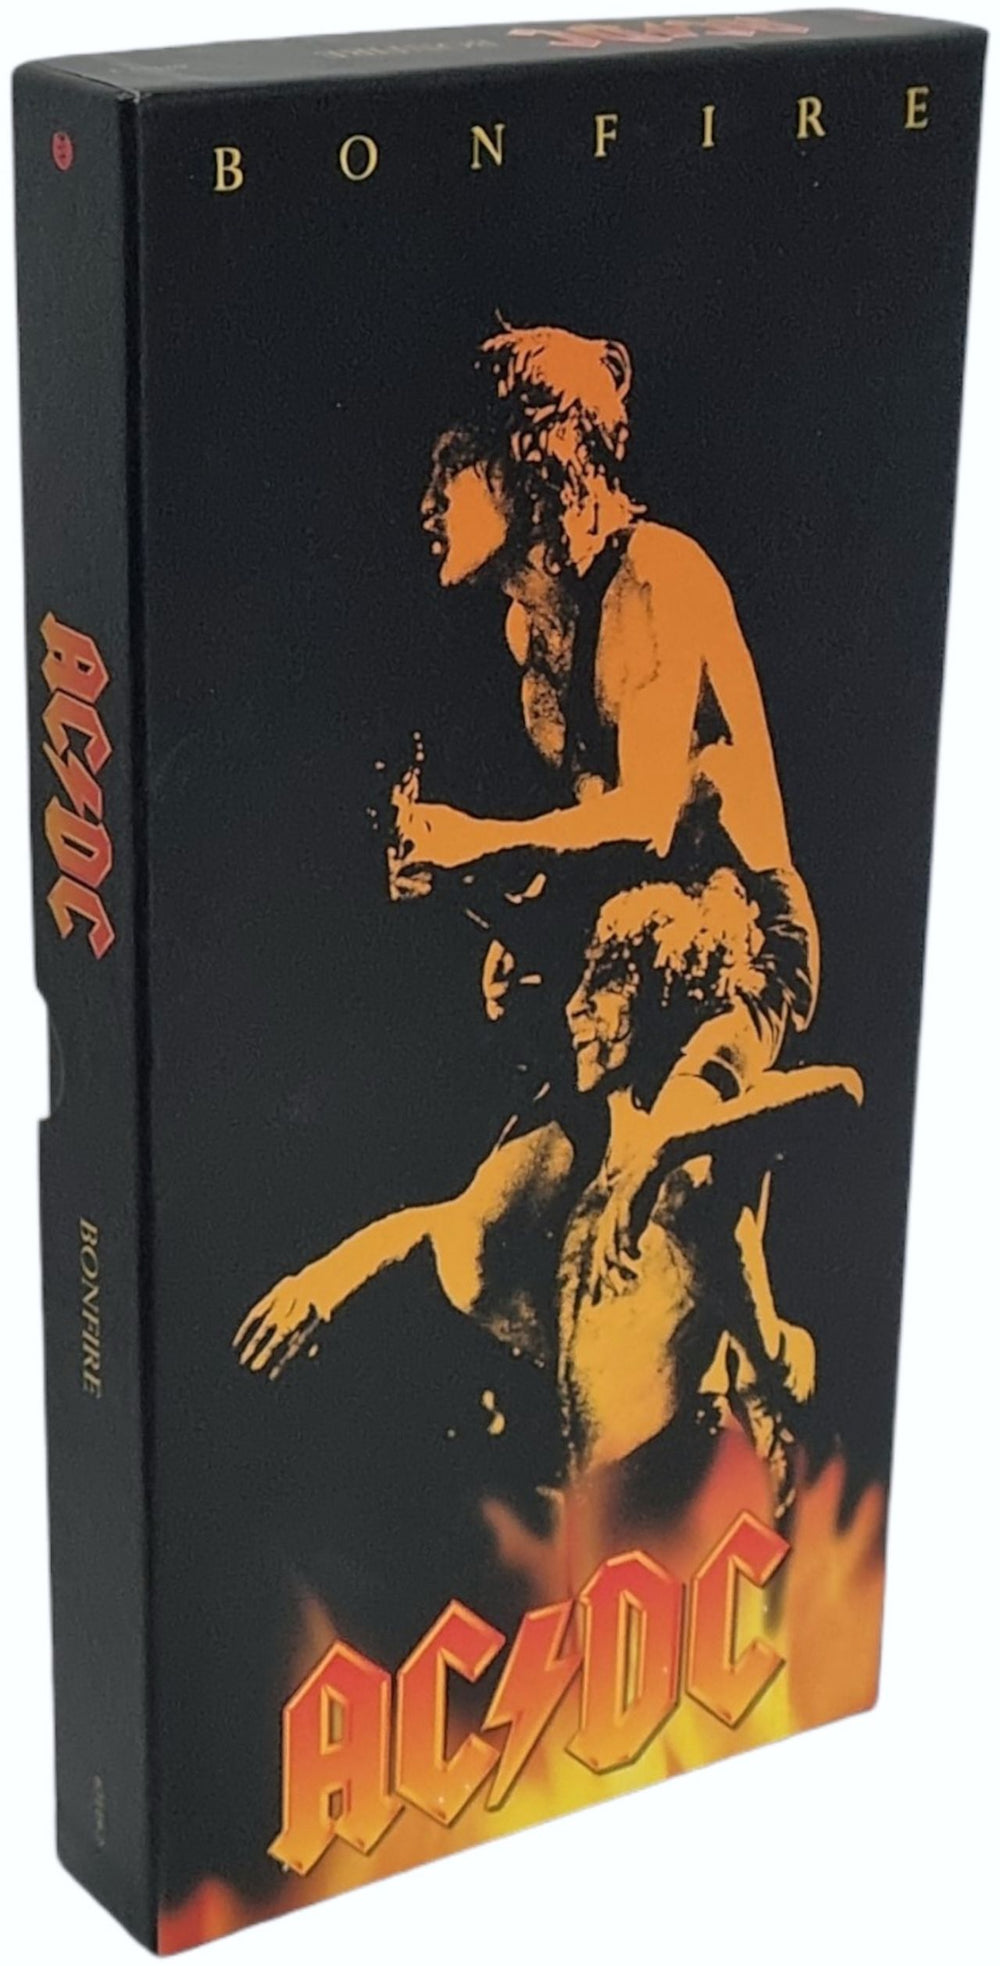 AC/DC Bonfire - 5 Cd Box US Cd album box set — RareVinyl.com